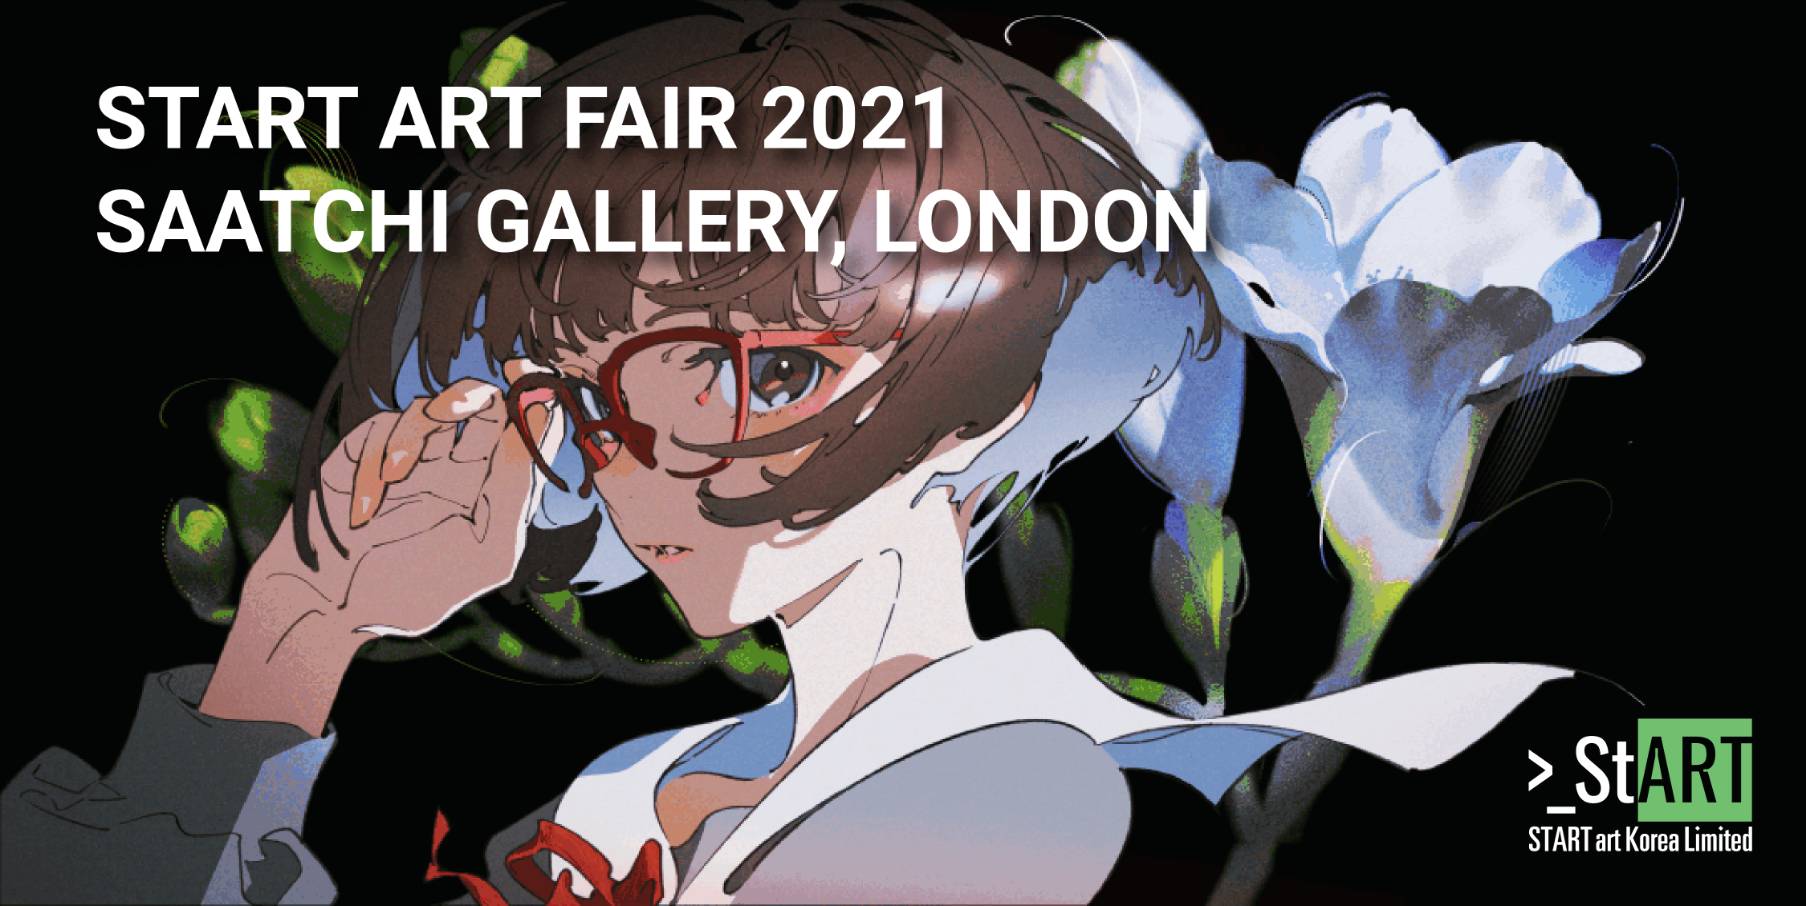 アニメーター／イラストレーションアーティスト米山舞が、ロンドン サーチ・ギャラリーで開催「START ART FAIR 2021」に日本人アーティストとして選出のサブ画像1